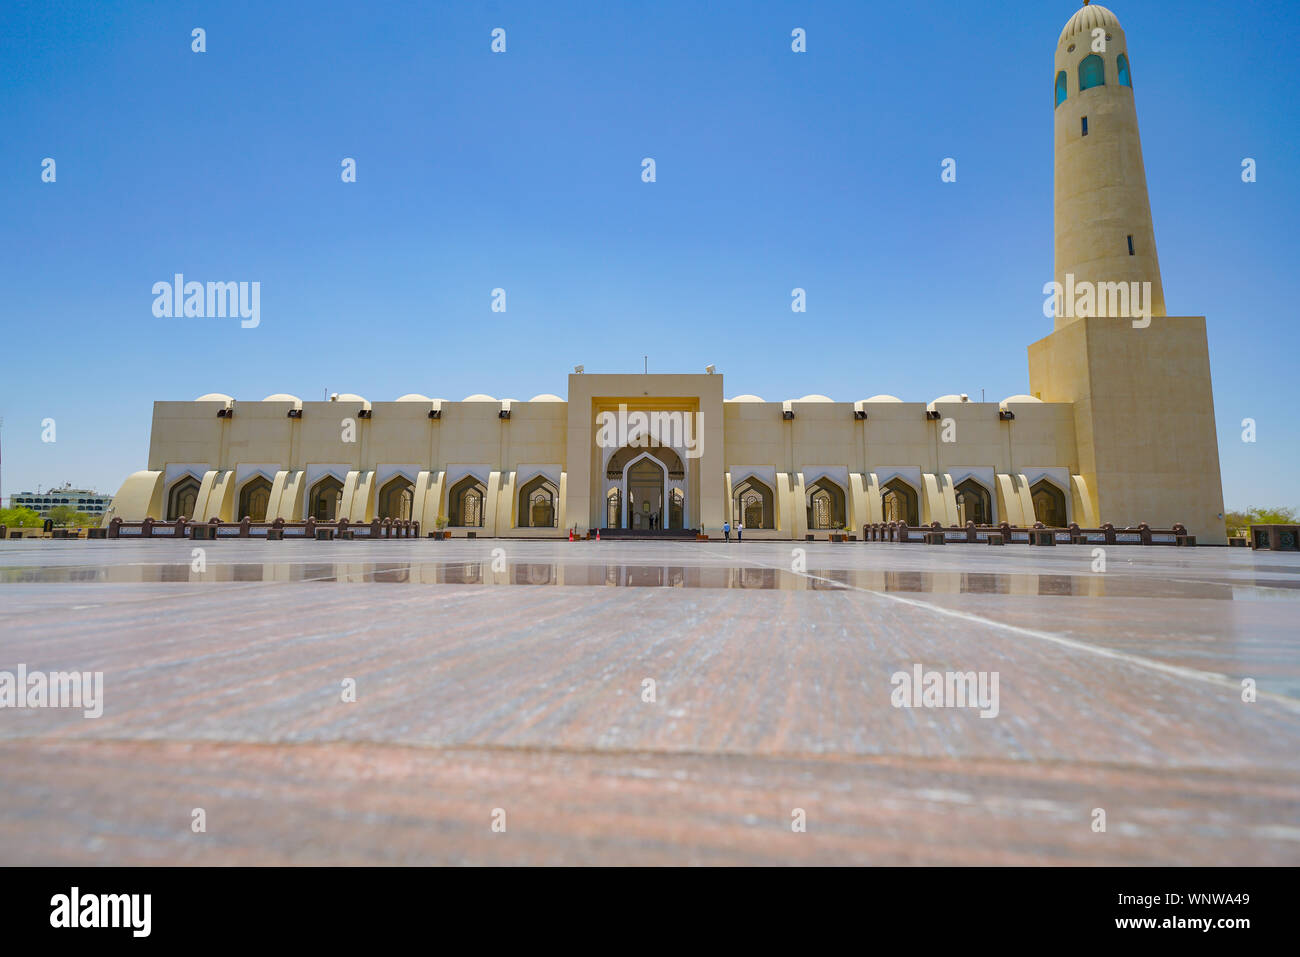 DOHA KATAR - 10 Juli 2019; Islamische Moschee ist beeindruckend groß und ausladend mit seinen modernen arabischen Architektur ist die neueste und größte Mos Stockfoto